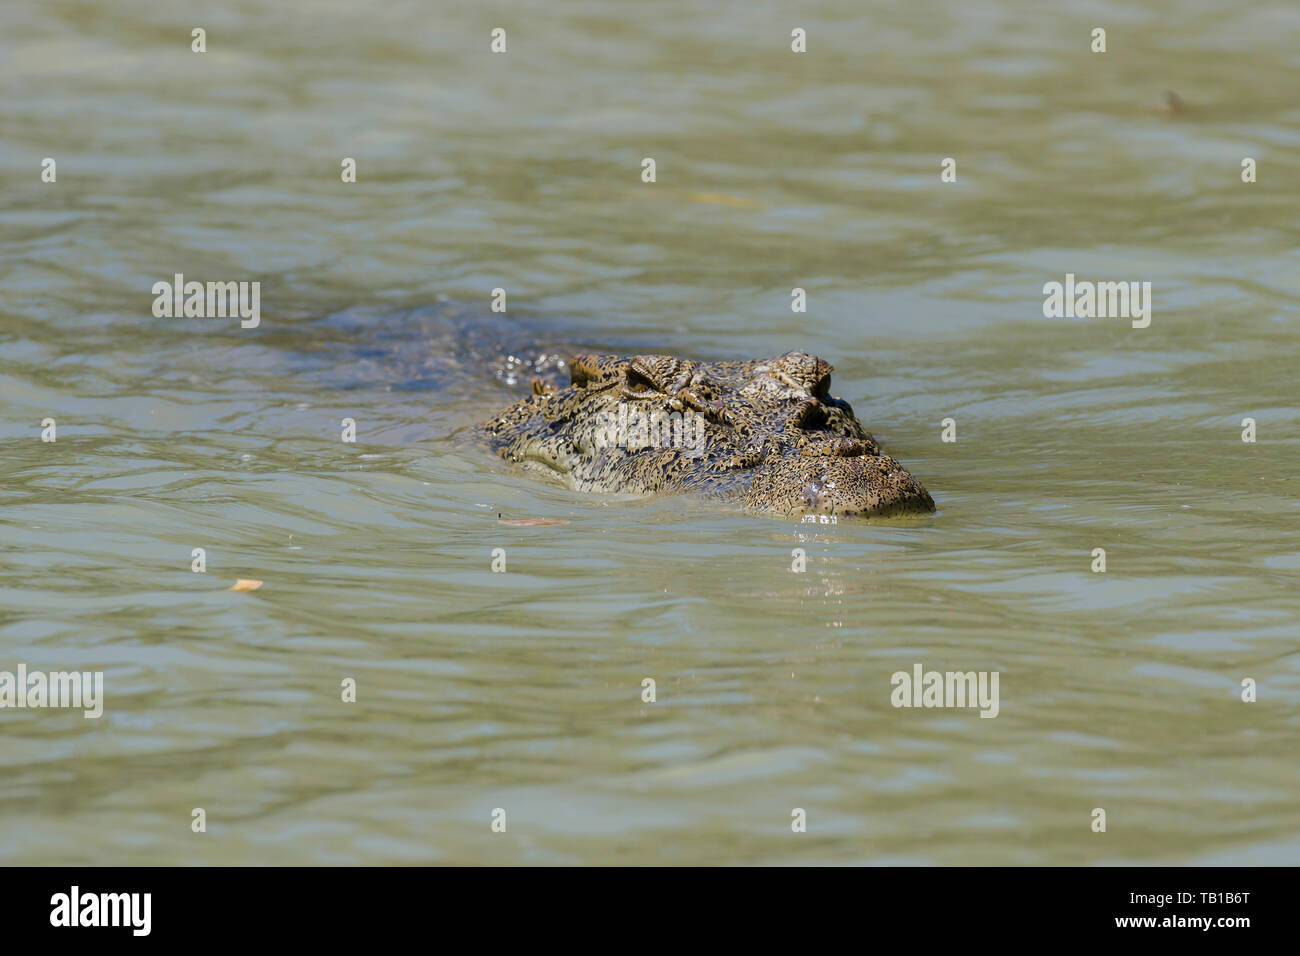 Nage de crocodiles d'eau salée dans la rivière East Alligator, Kakadu, territoire du Nord, Australie Banque D'Images